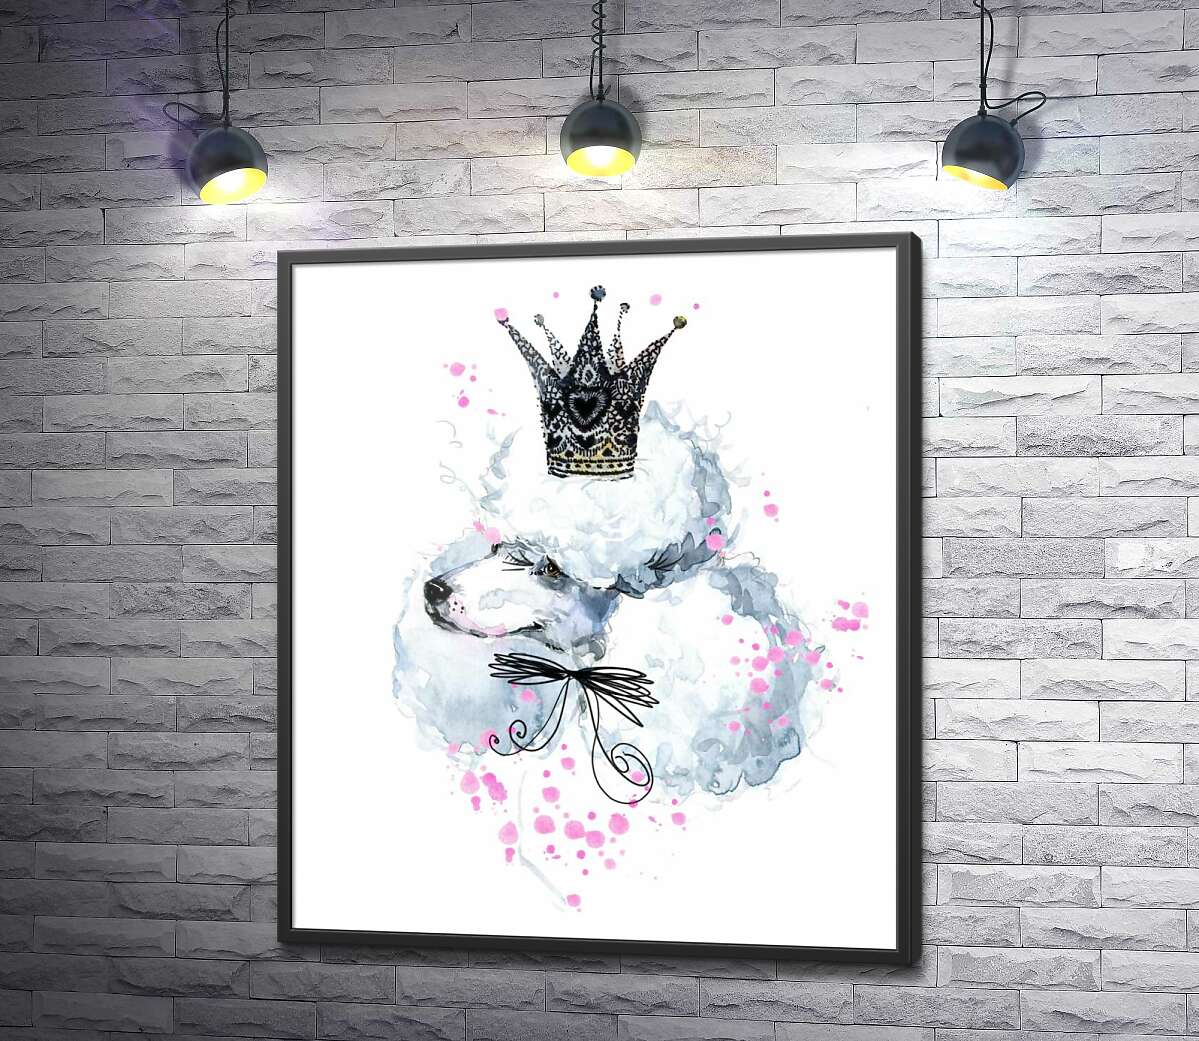 постер Элегантный пудель с ажурной короной на голове